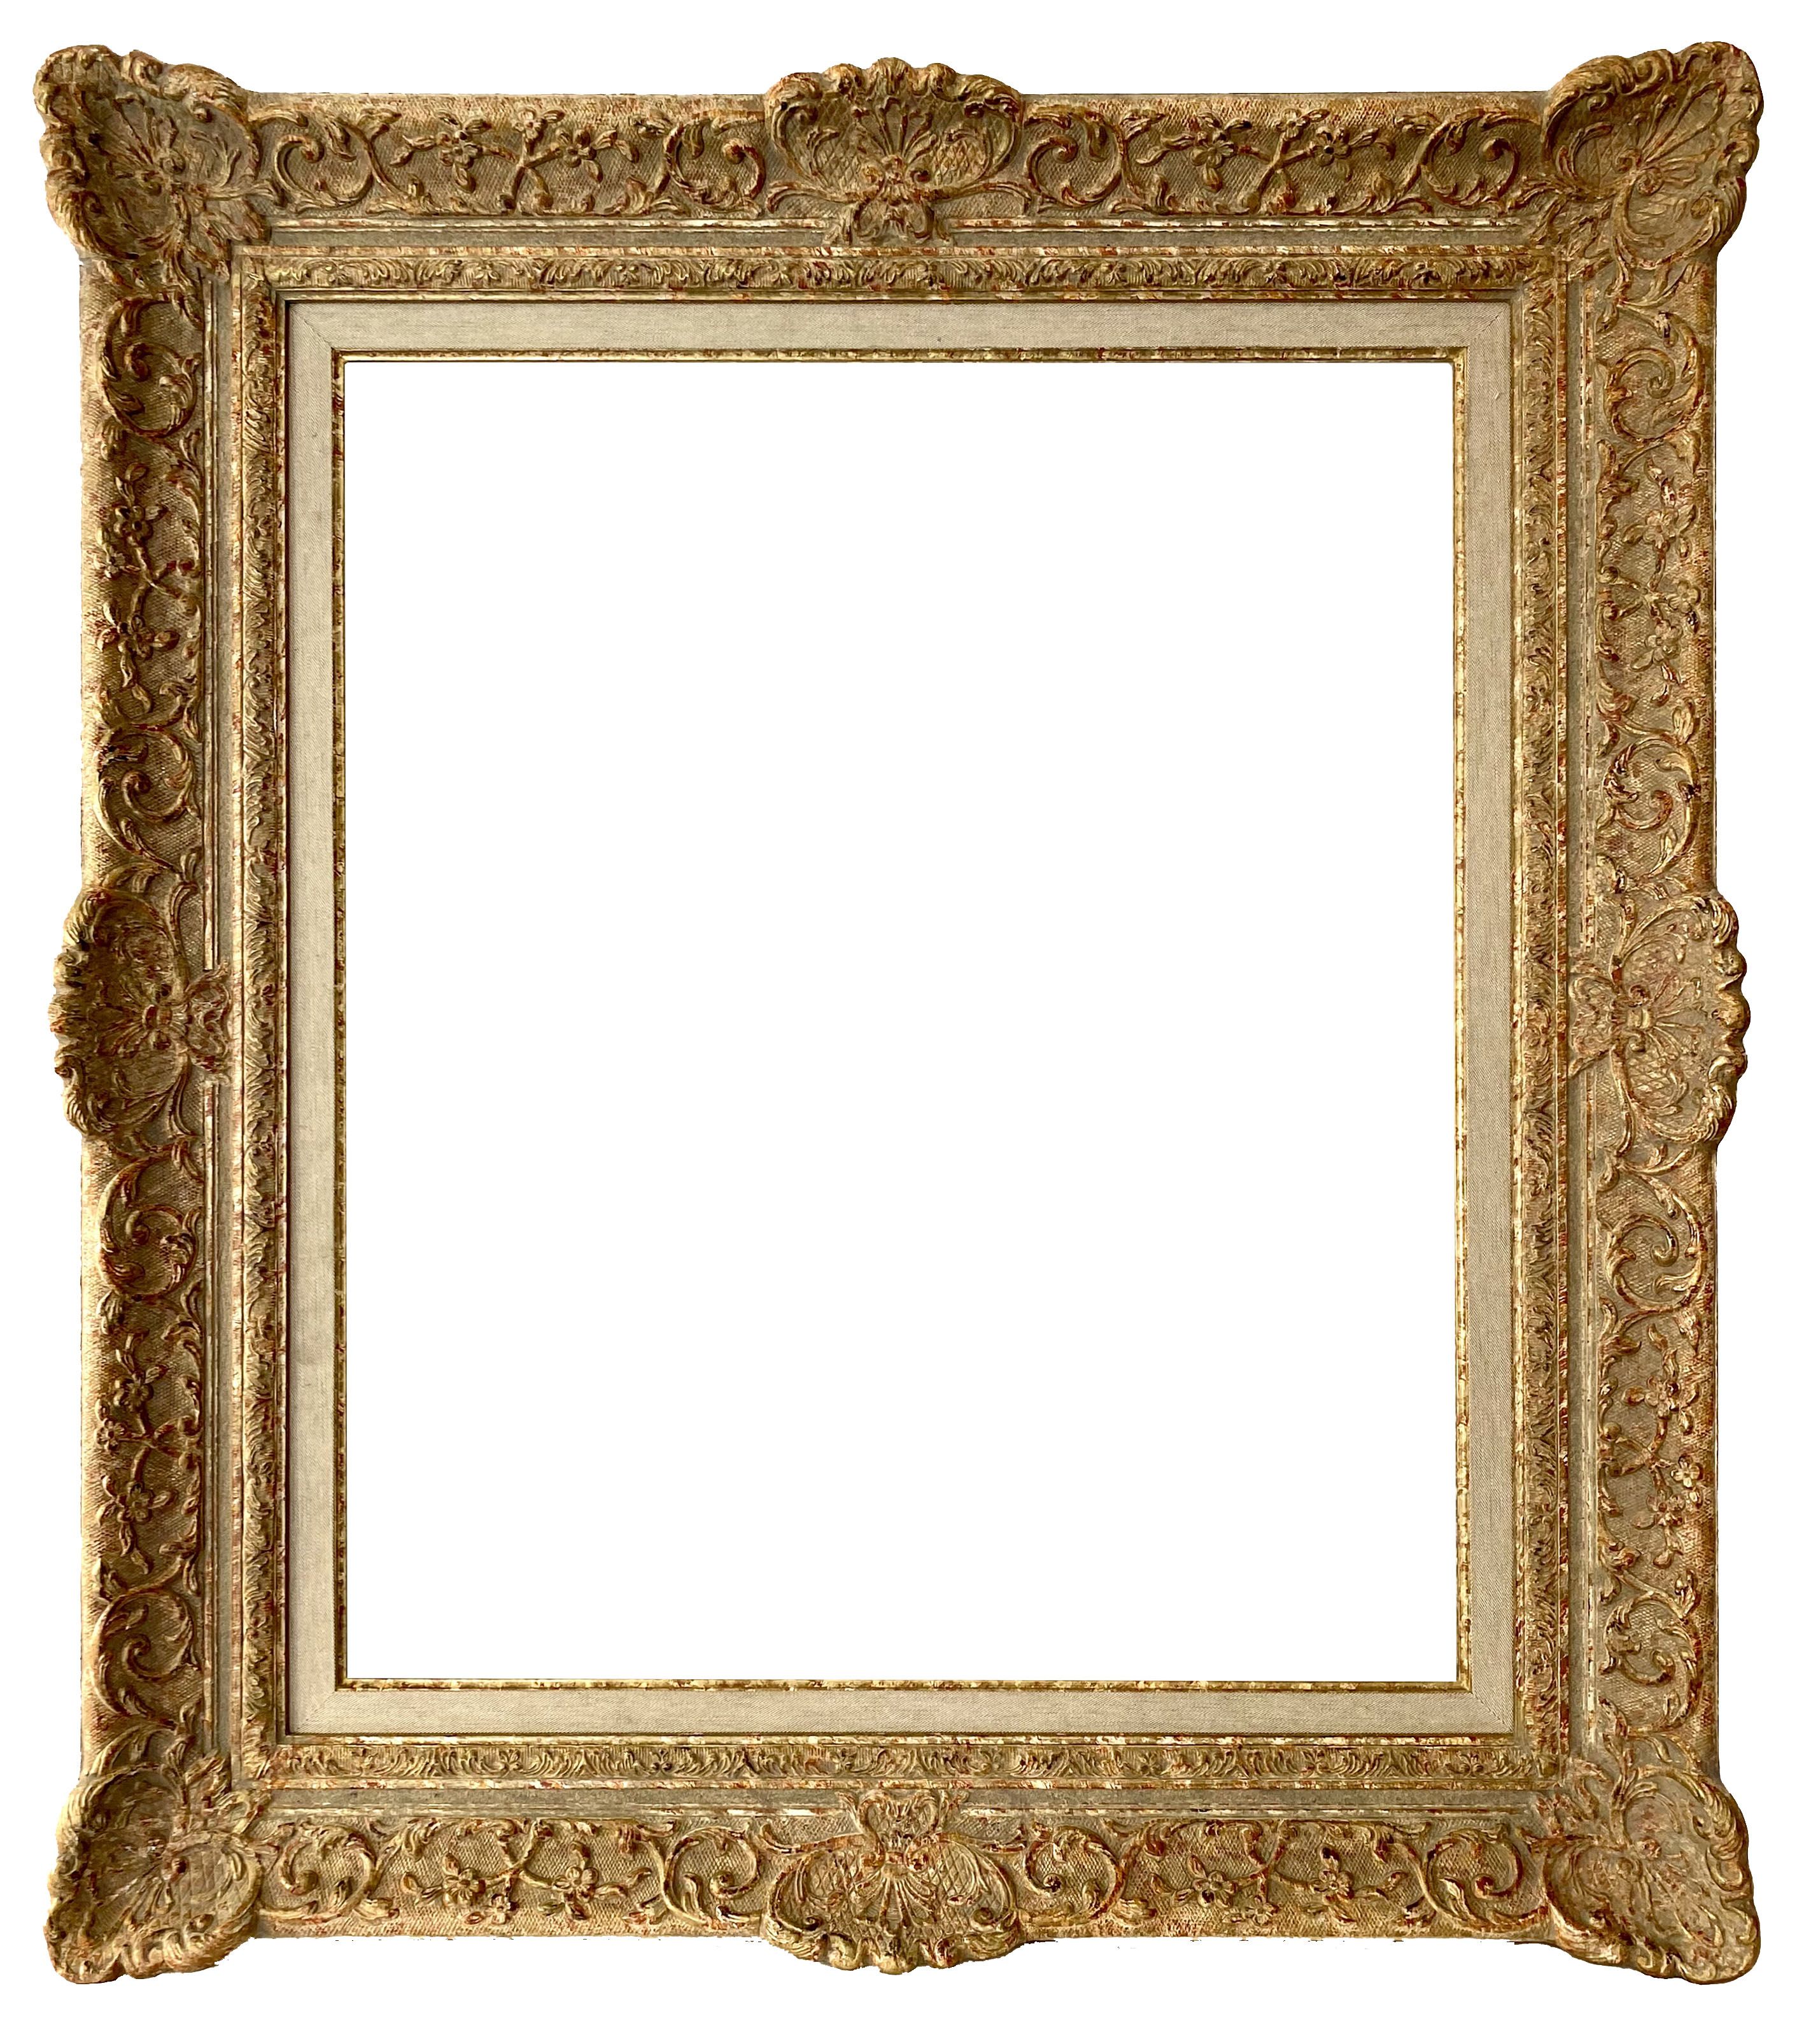 Cadre de style Louis XIV - 65,80 x 54,80 - REF - 1292